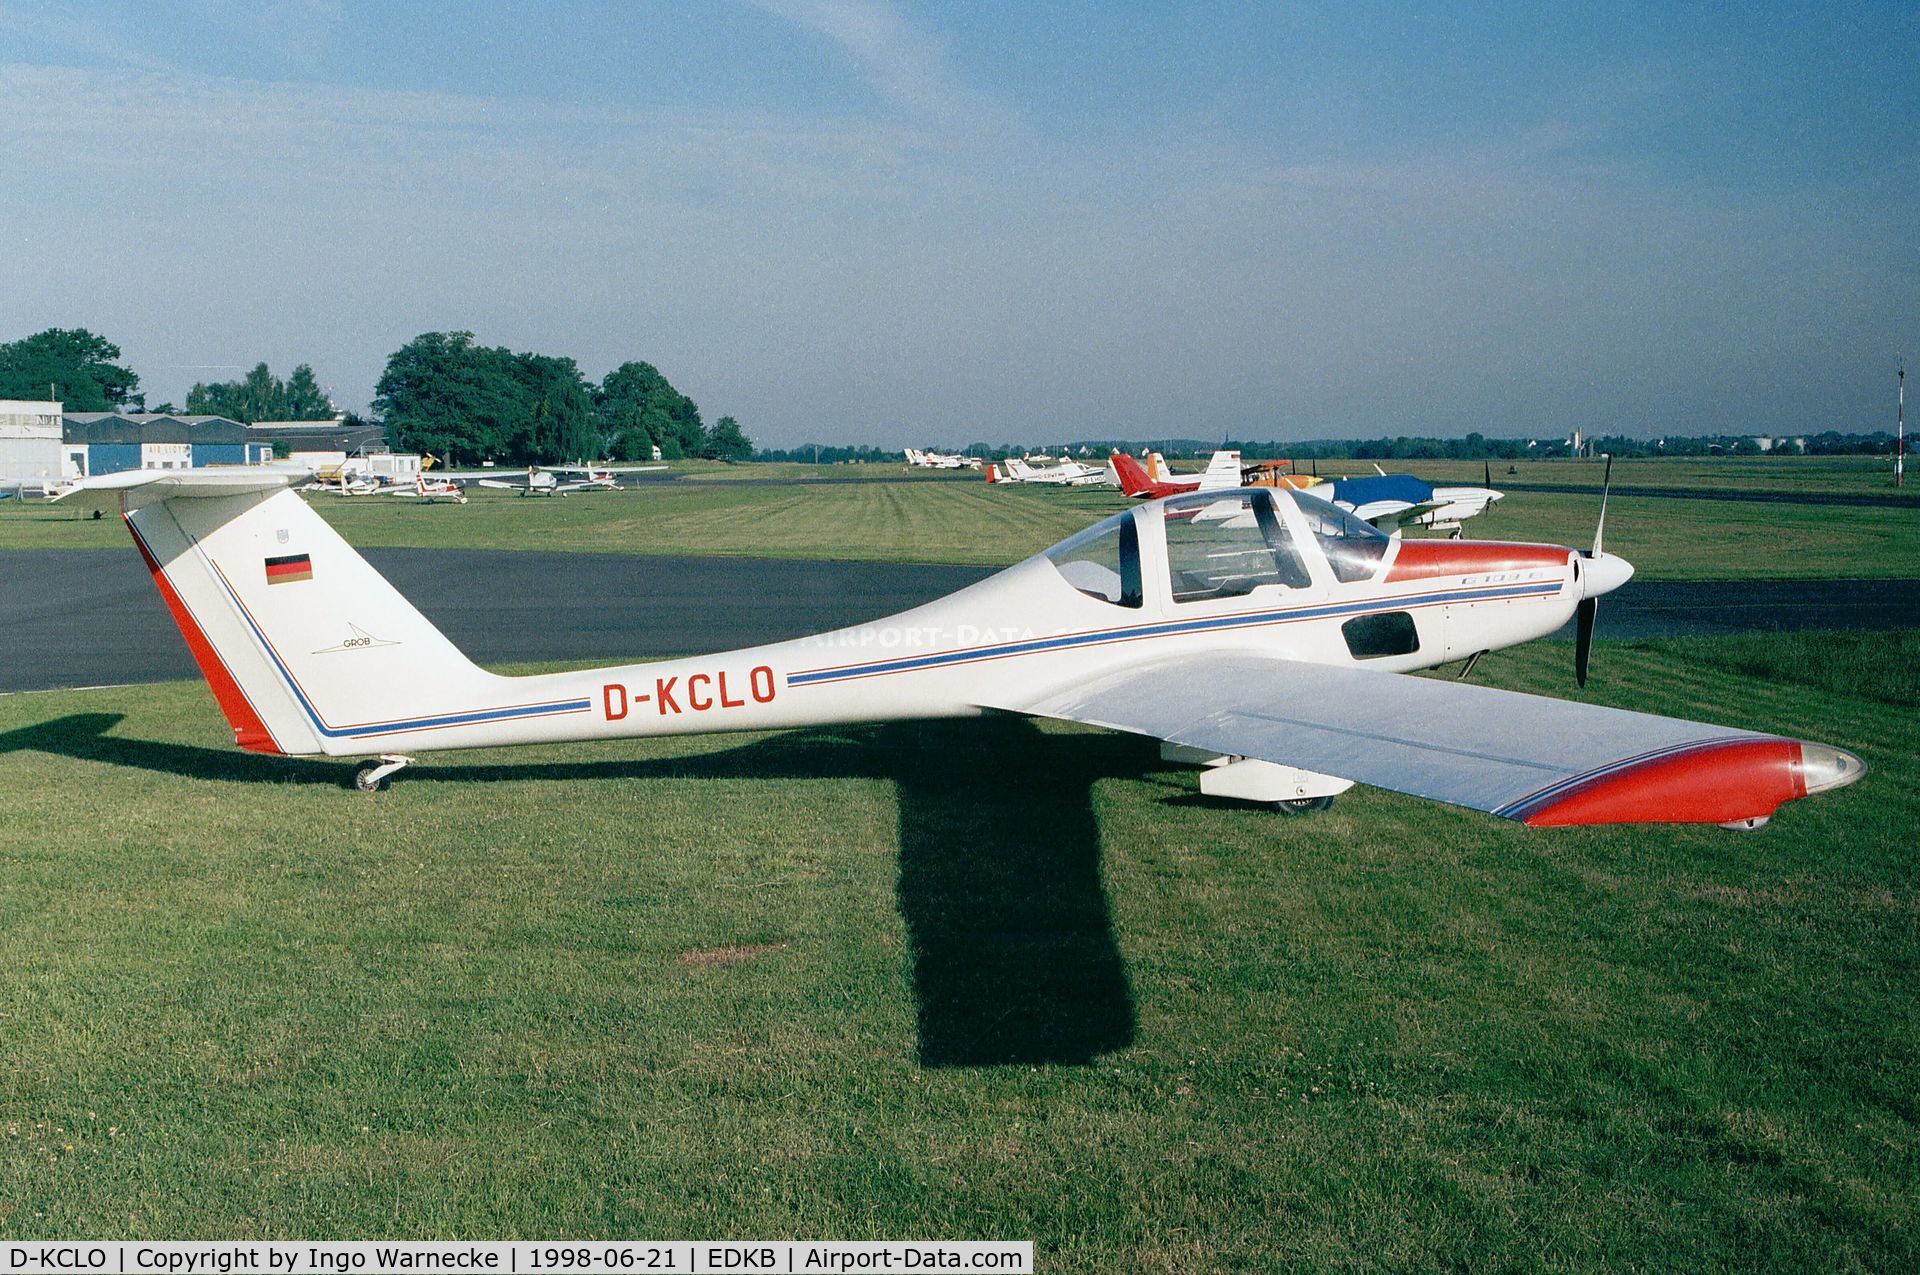 D-KCLO, Grob G-109B C/N 6346, Grob G.109B at Bonn-Hangelar airfield